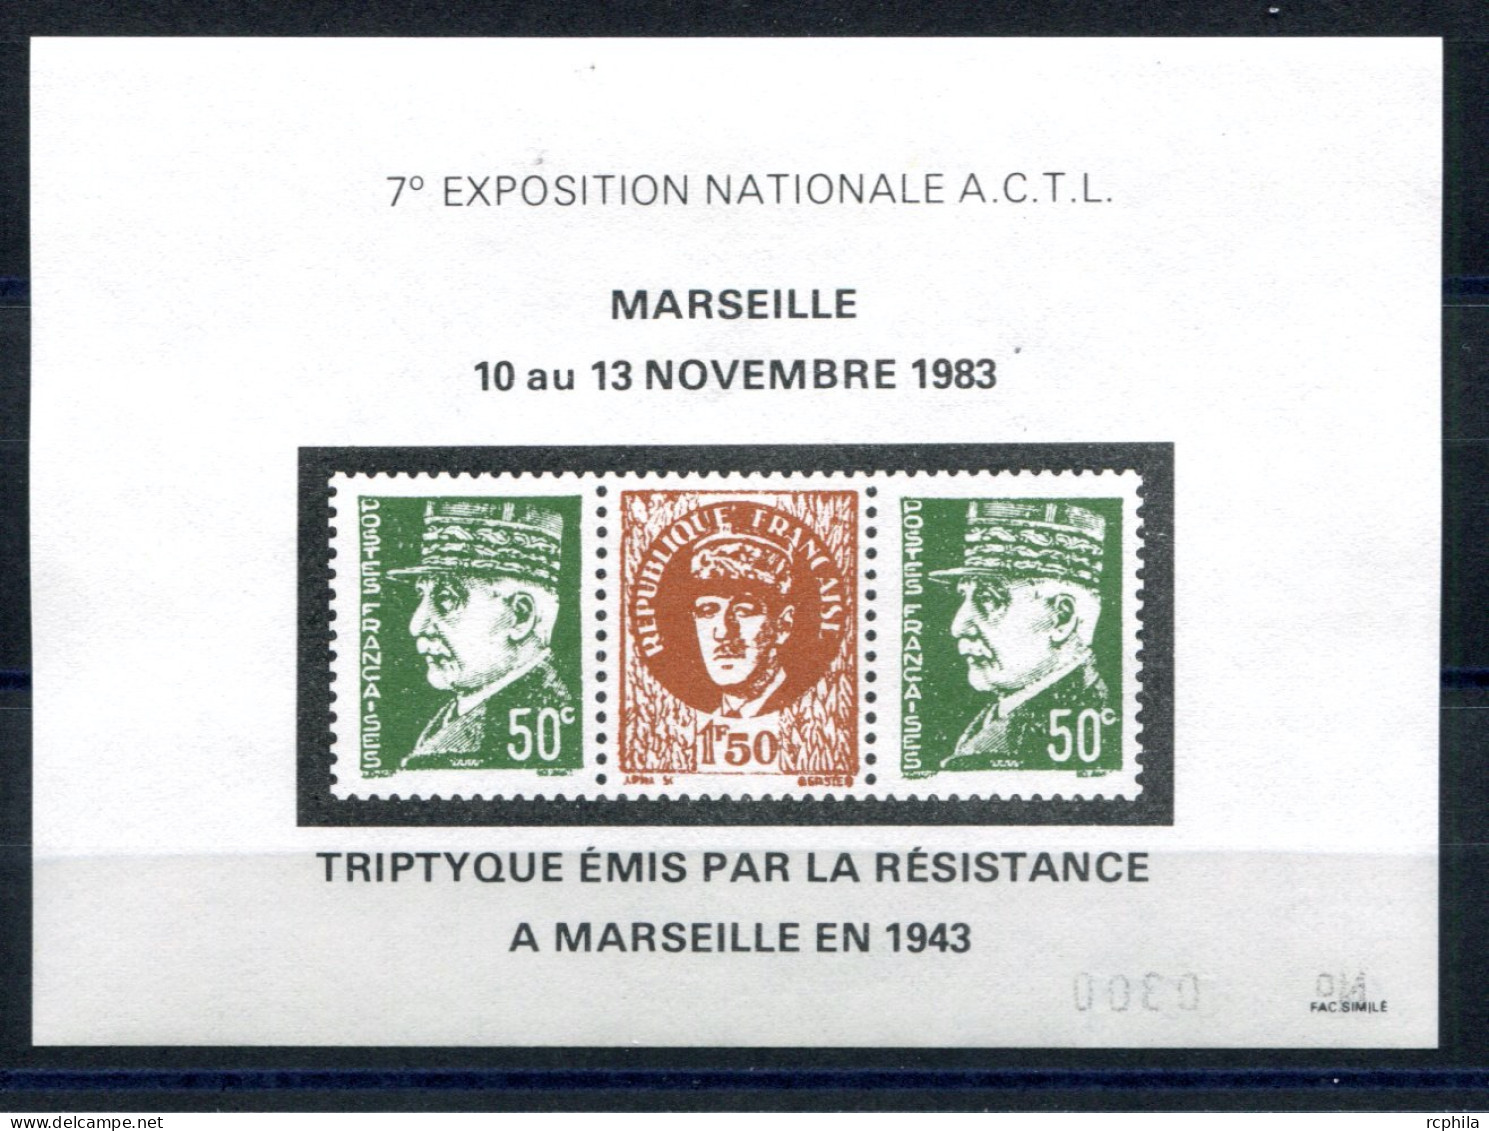 RC 27328 FRANCE 1983 TRIPTYQUE EMIS PAR LA RÉSISTANCE MARSEILLE 1943 BLOC FEUILLET FAC SIMILÉ EMIS LORS DE L EXPOSITION - Briefmarkenmessen